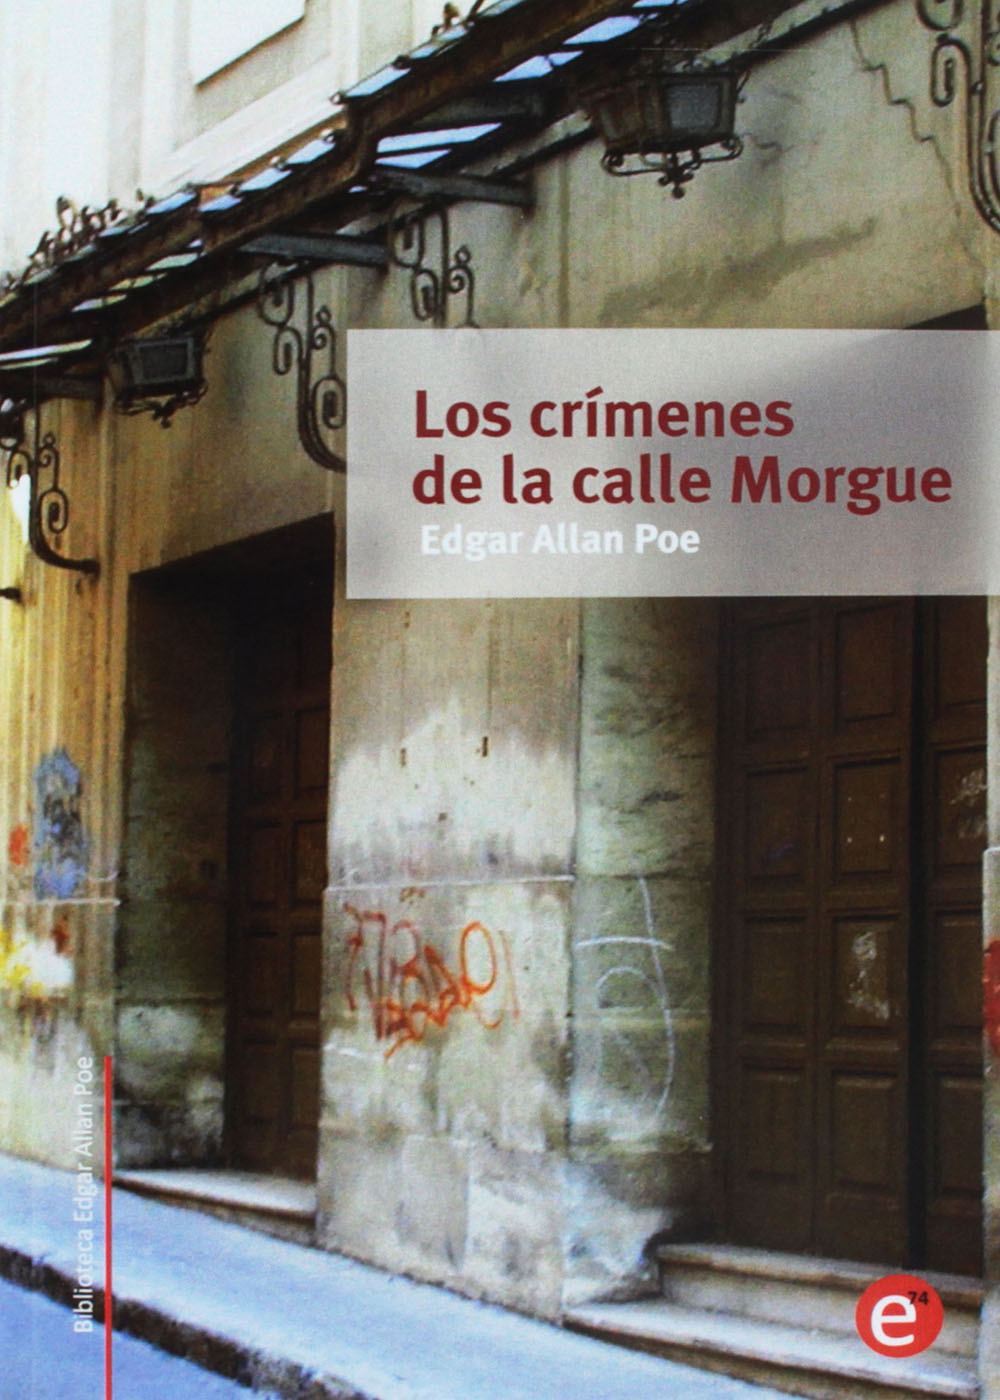 Los crímenes de la calle Morgue - Edgar Allan Poe